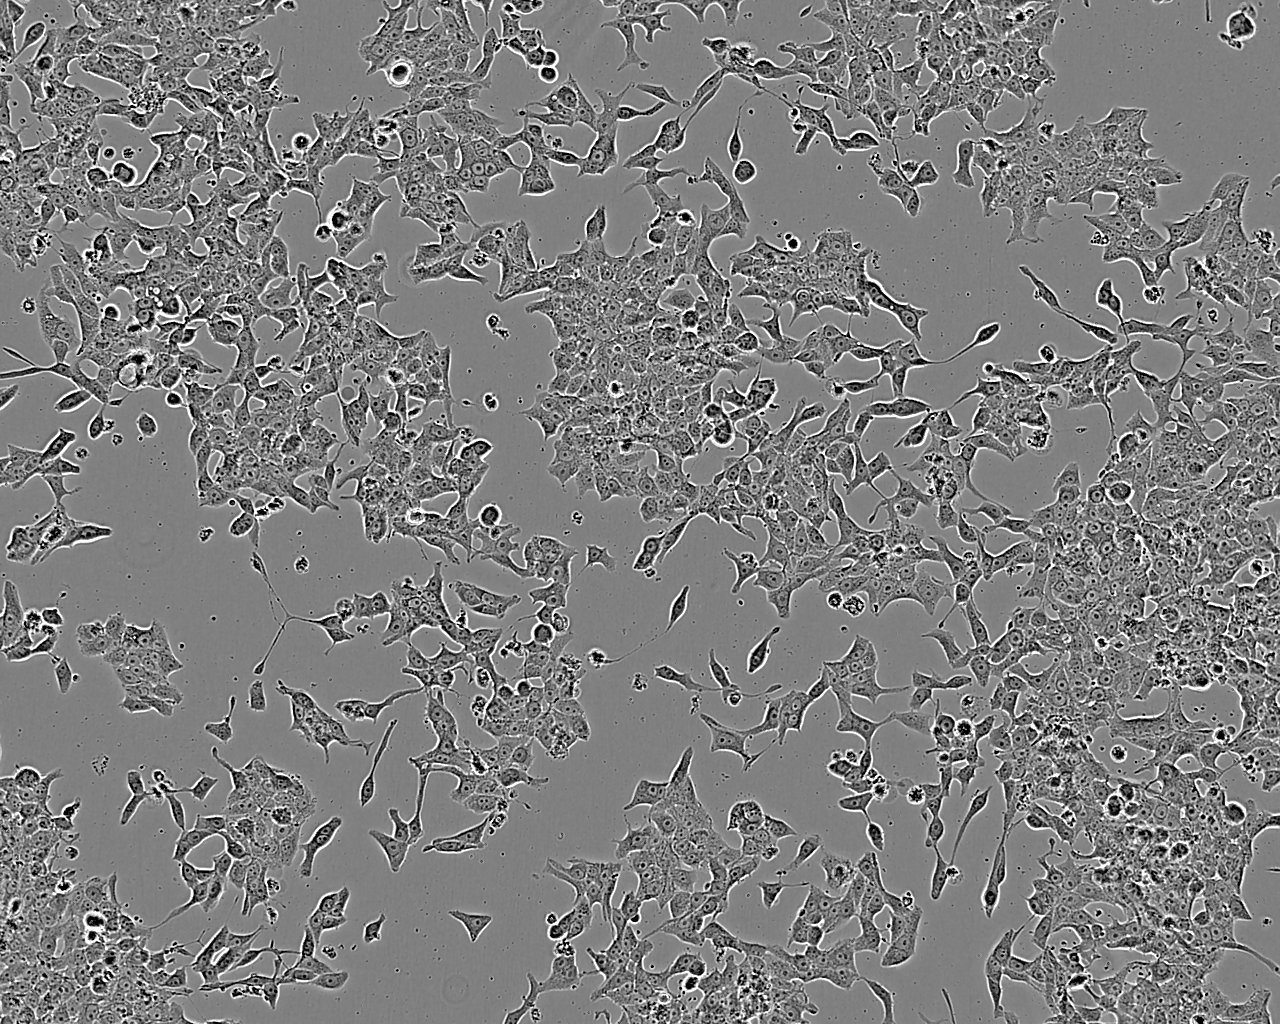 3T3-Swiss albino 小鼠胚胎成纤维细胞系